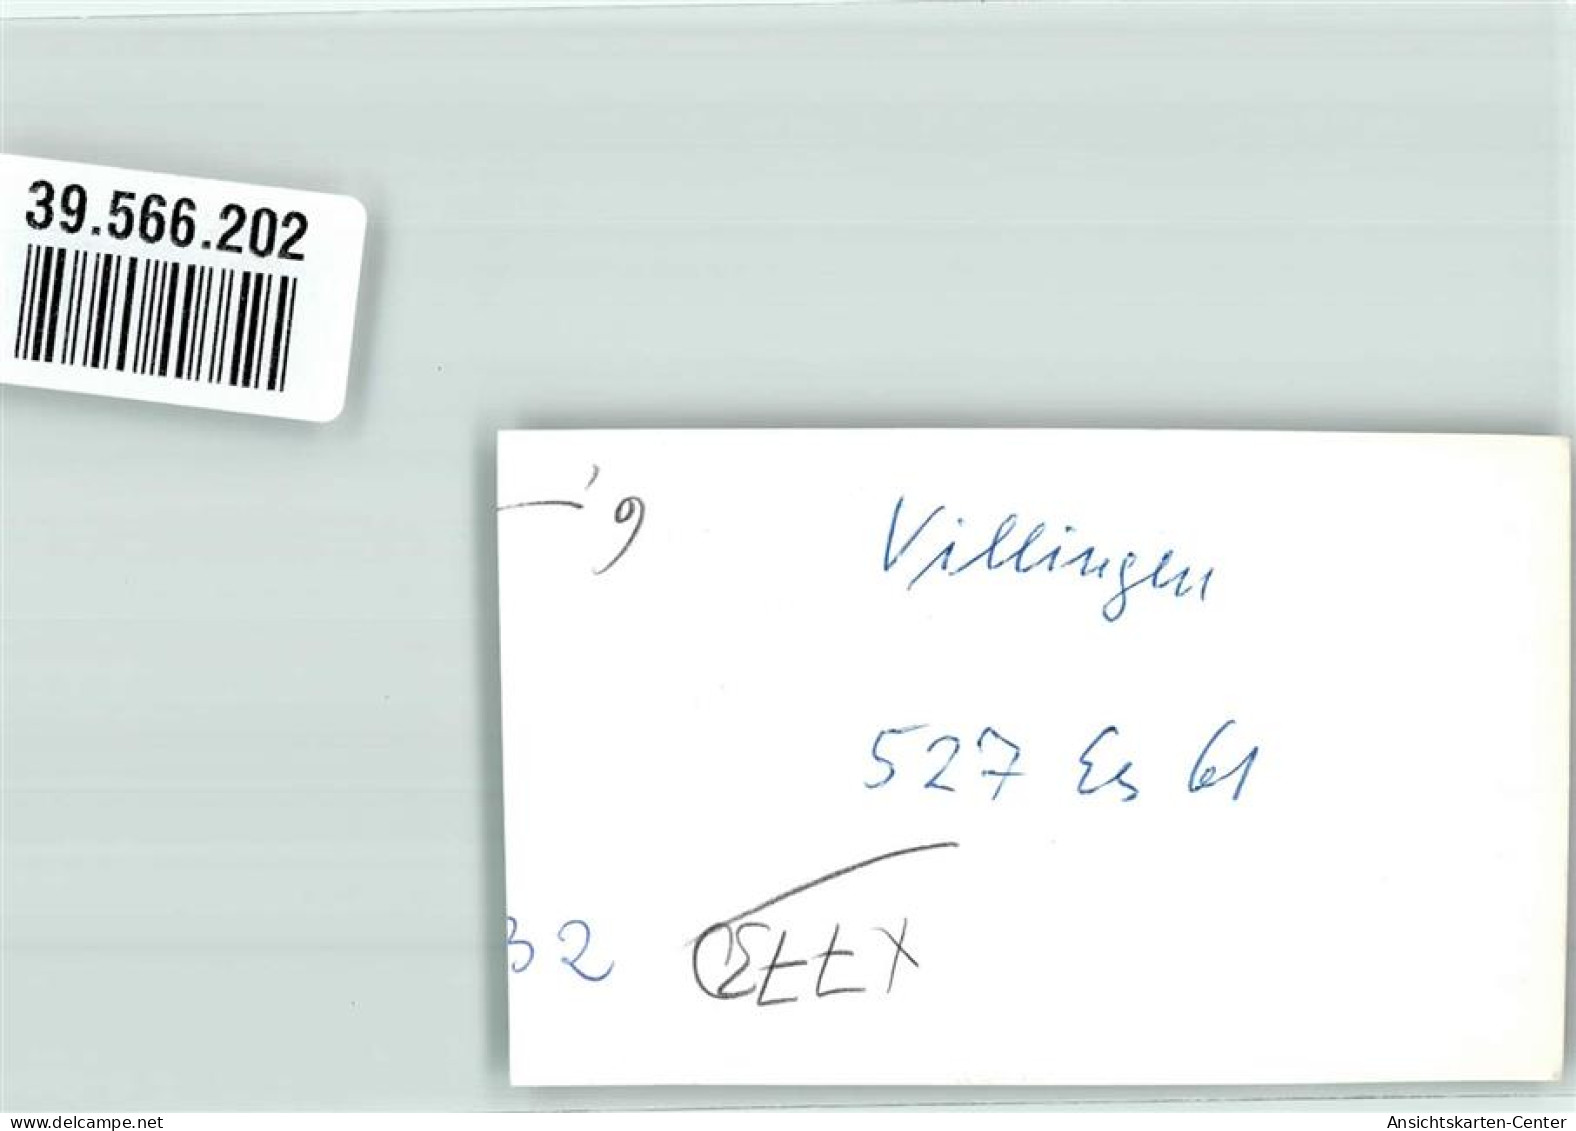 39566202 - Villingen -Schwenningen - Villingen - Schwenningen